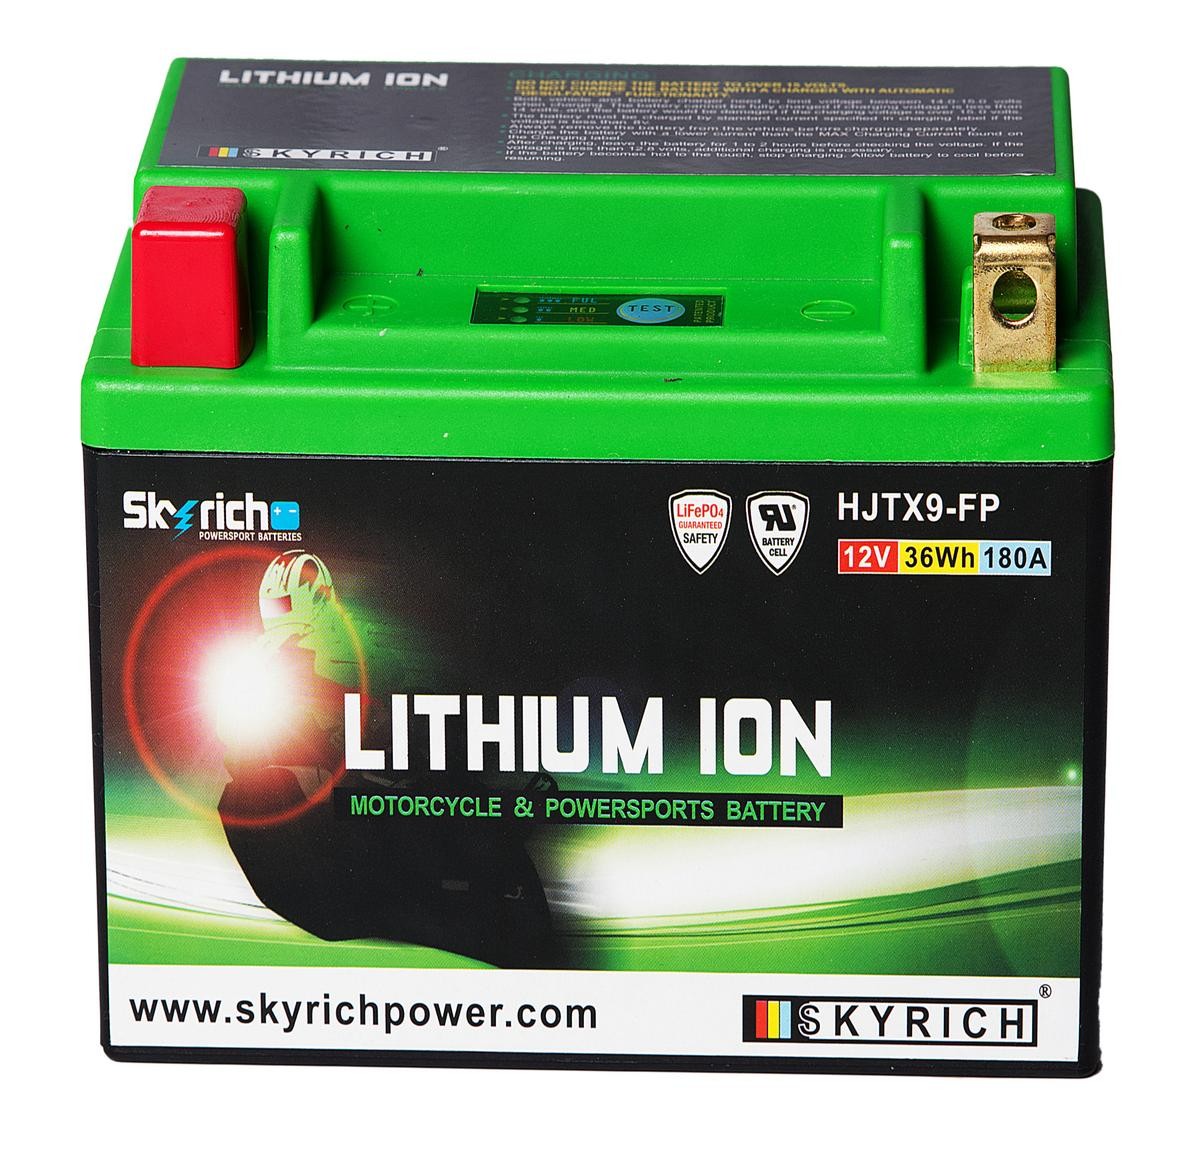 AEON URBAN Batterie 12V 3Ah 180A N Li-Ionen-Batterie SKYRICH LITHIUM ION HJTX9-FP